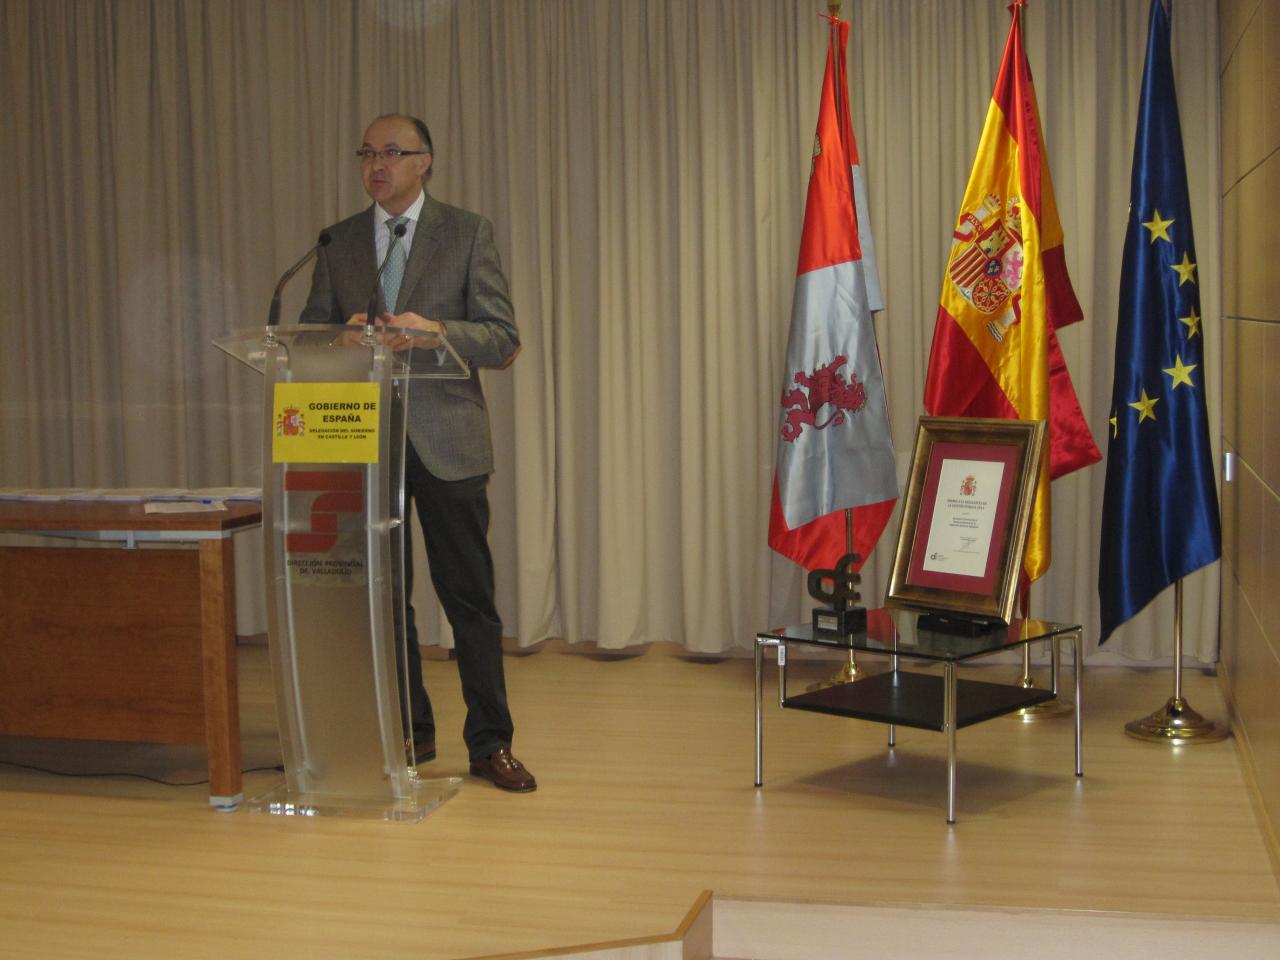 El delegado del Gobierno en Castilla y León hace partícipes a los trabajadores del Premio a la Excelencia obtenido por la Tesorería General de la Seguridad Social de Valladolid